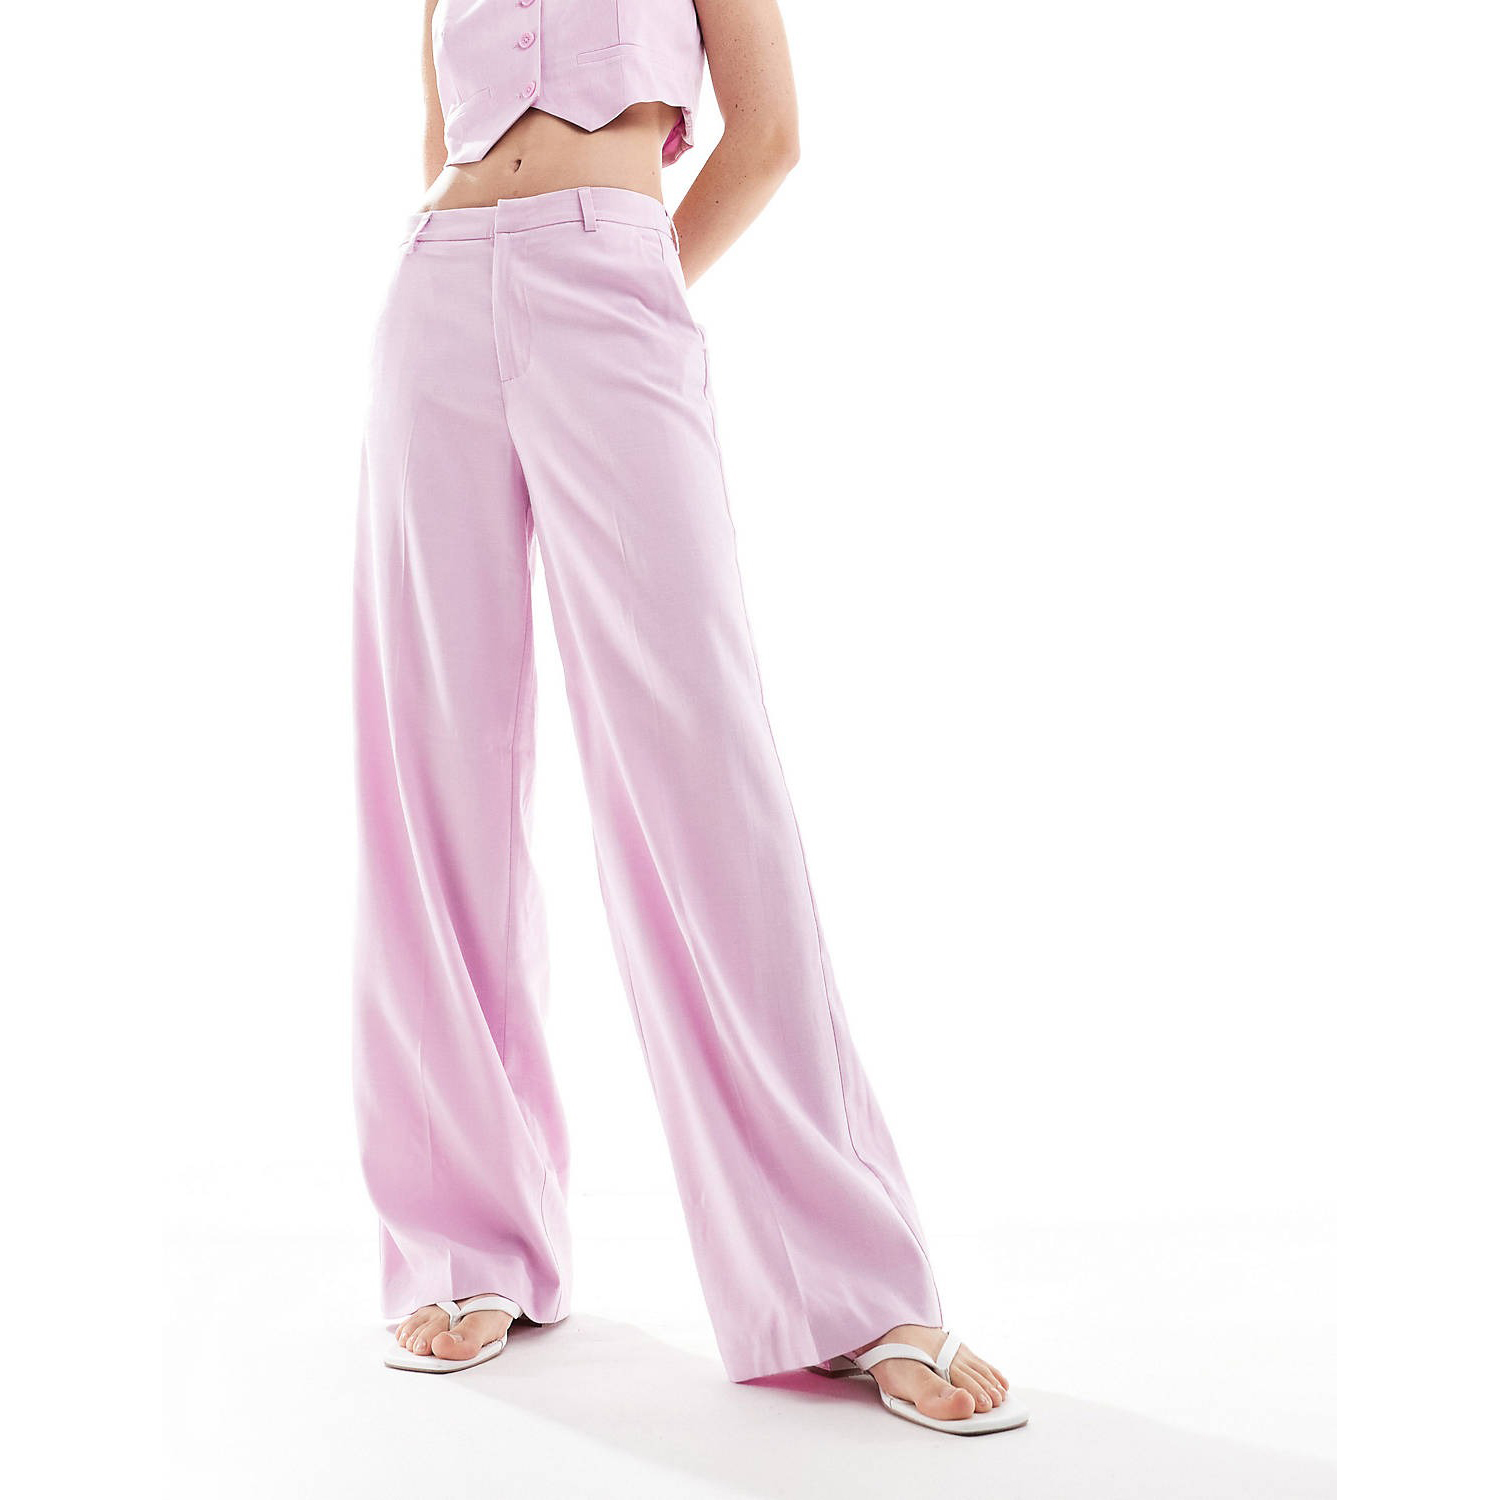 Брюки Only High Waisted Wide Leg, светло-розовый брюки женские с широкими штанинами тонкие повседневные драпированные штаны с завышенной талией в западном стиле текстурные свободные др